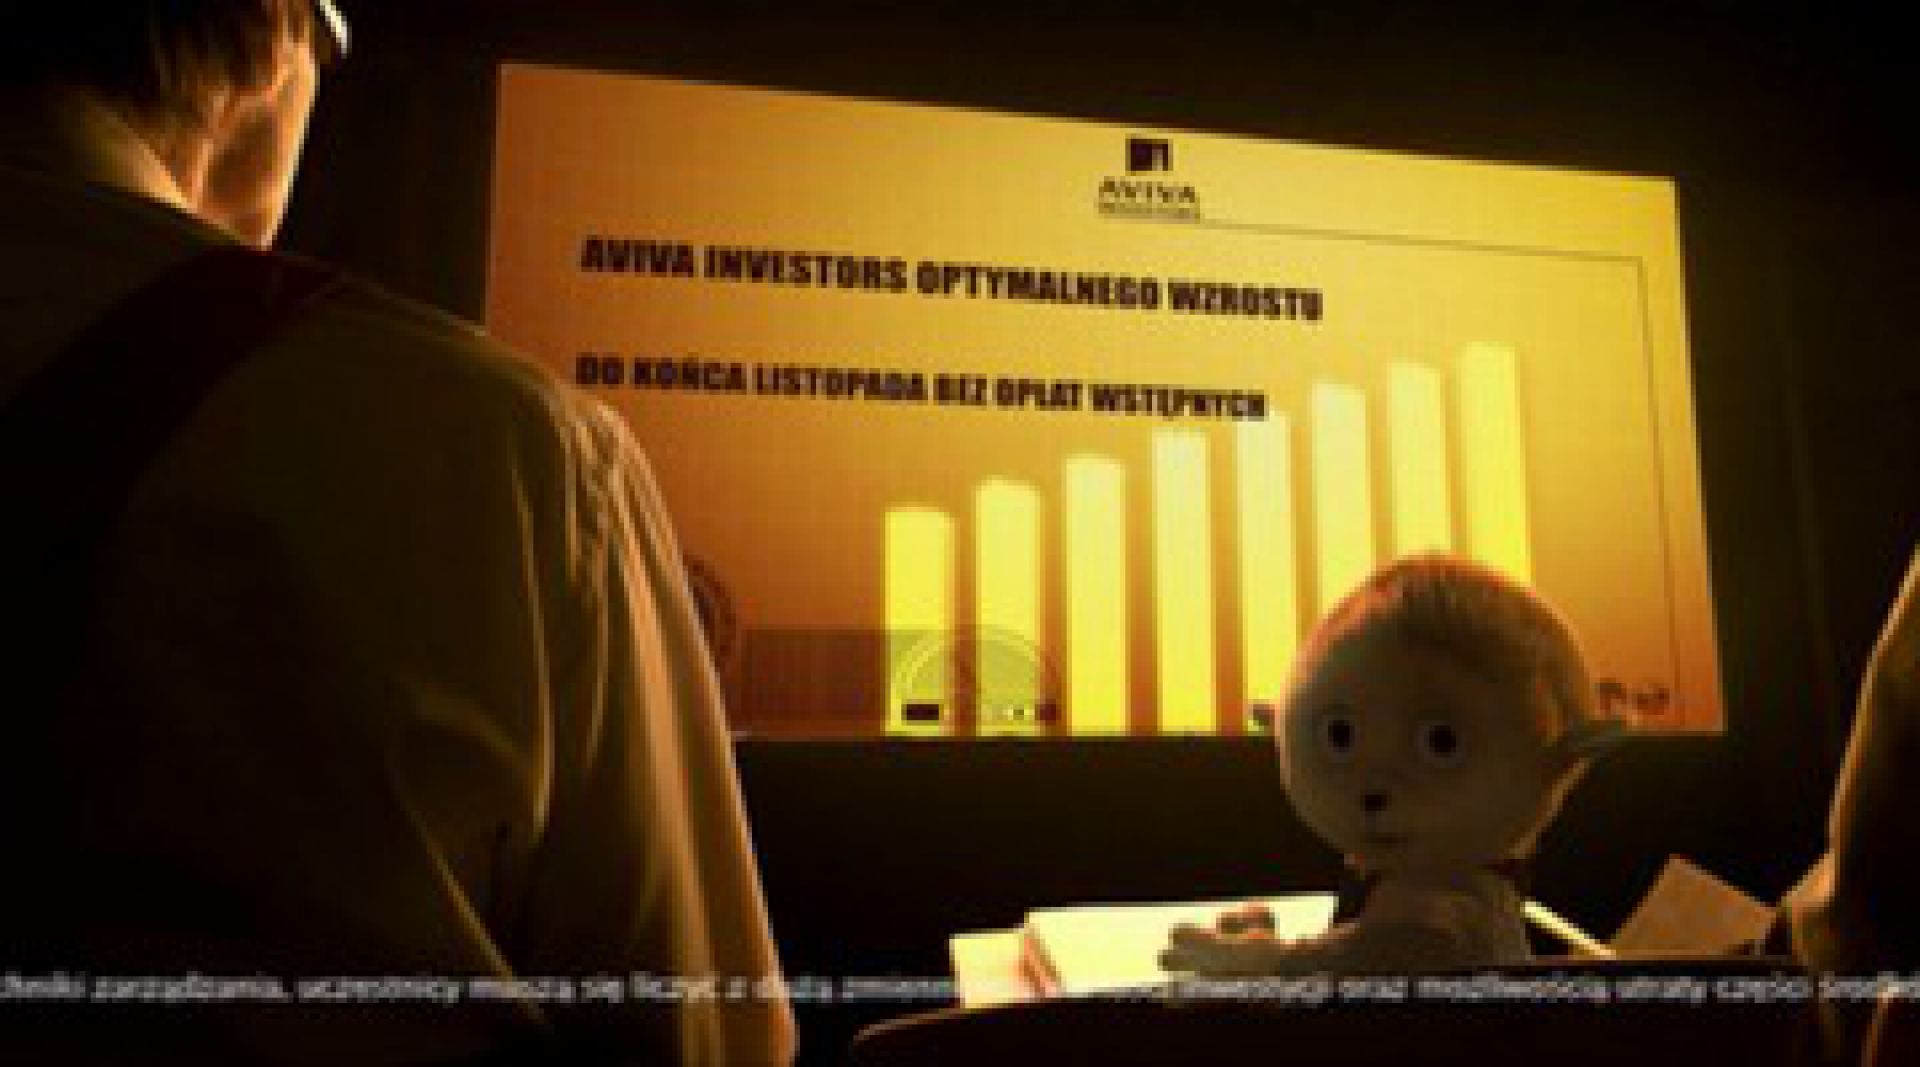 1_2010_AVIVA_Investors.png Iwo Zaniewski